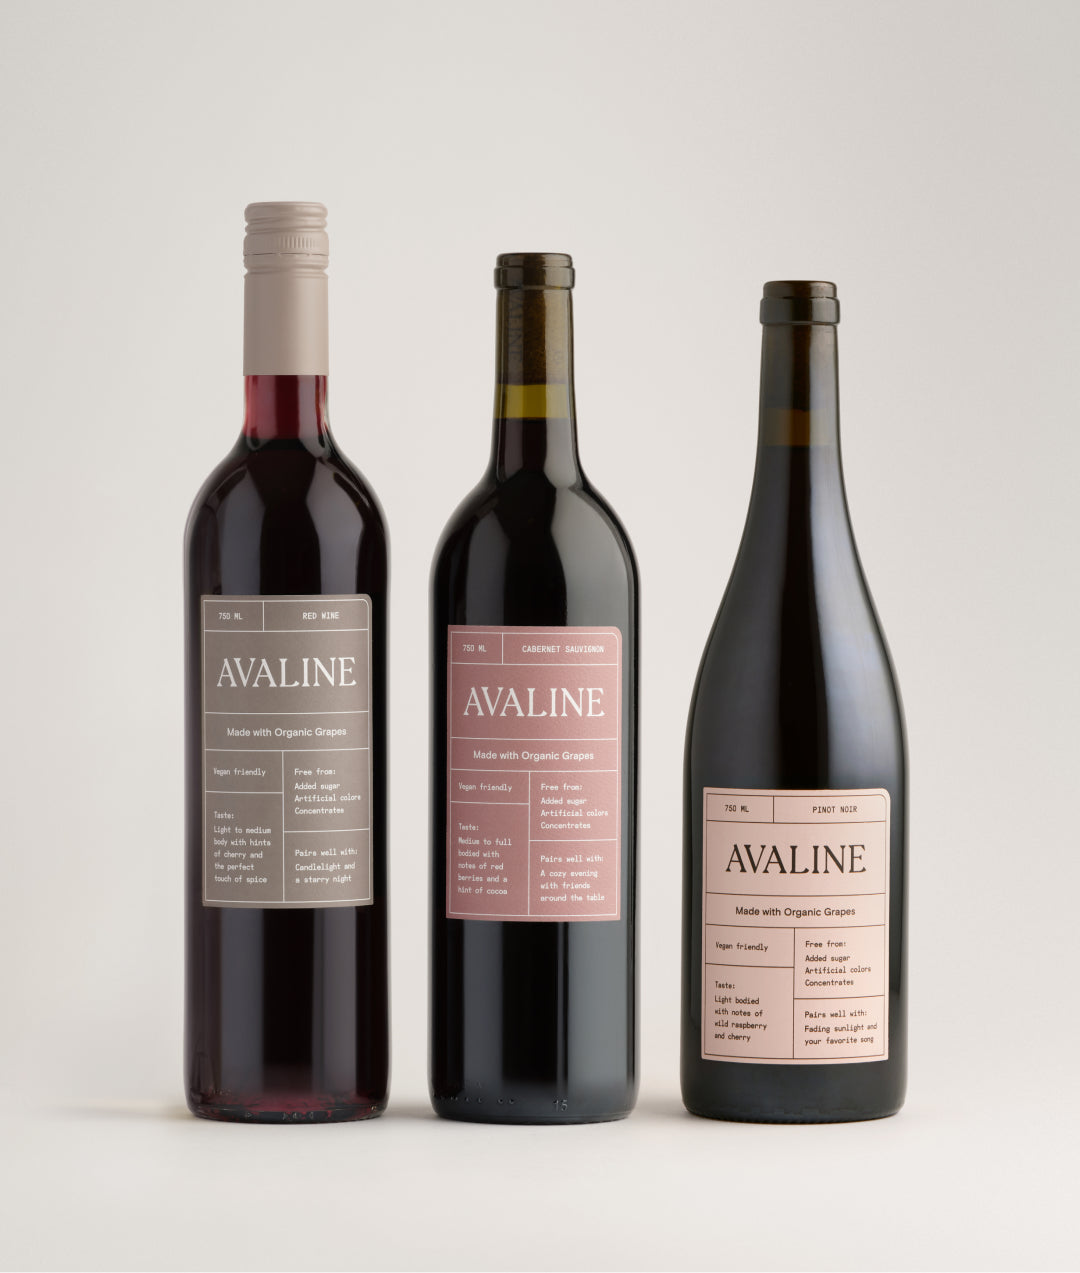 Barefoot Wine Bundle - 6 Pack Bottle Set